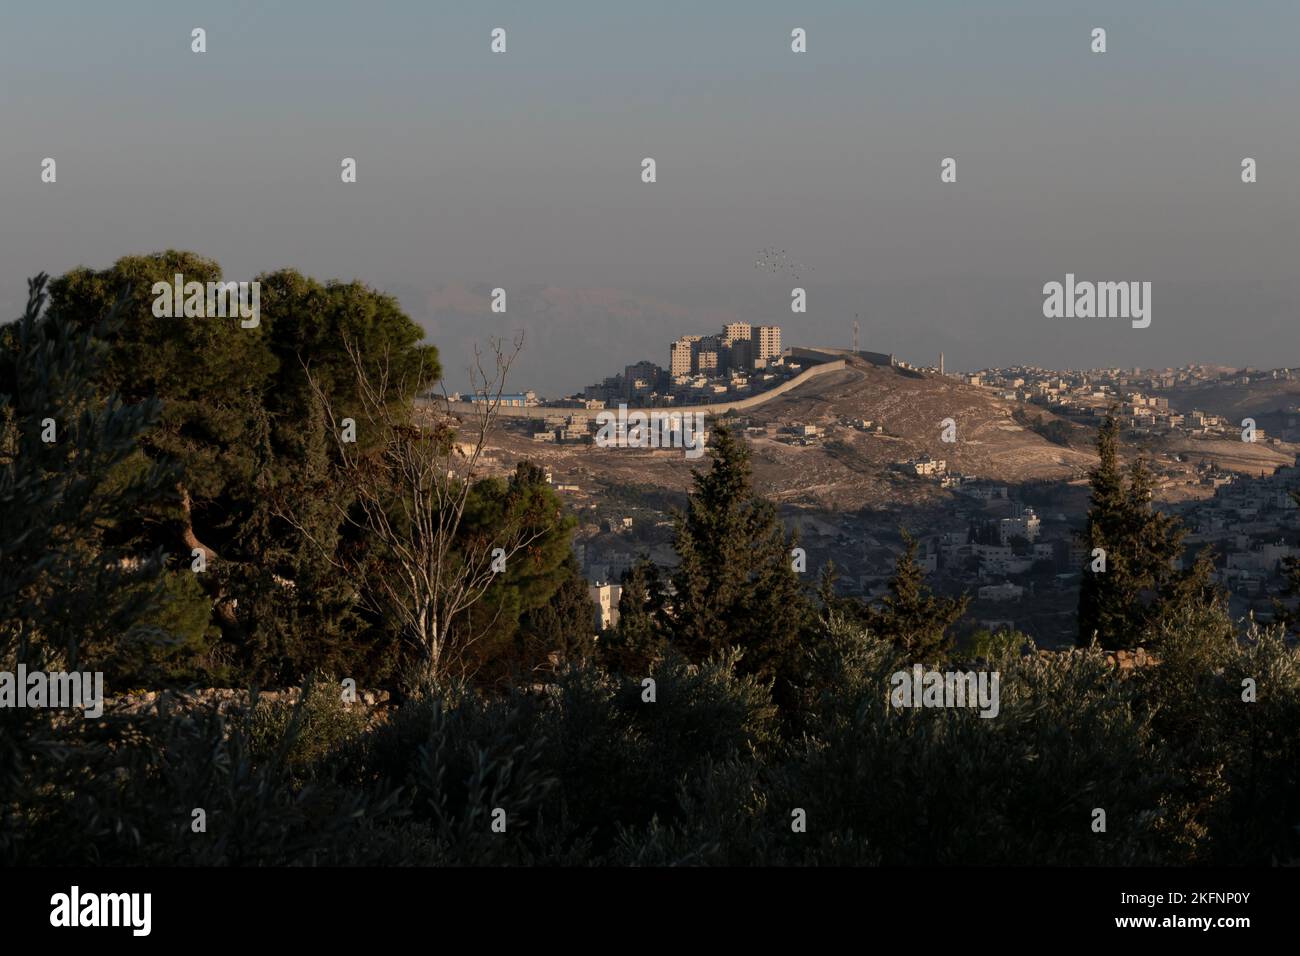 Blick auf die israelische Westjordanland-Trennmauer, die Abu Dis oder Abu Dis durchschneidet eine palästinensische Gemeinschaft, die dem palästinensischen Gouvernement Jerusalem angehört und durch eine von Israel errichtete Trennmauer von Jerusalem abgeschnitten wurde Stockfoto